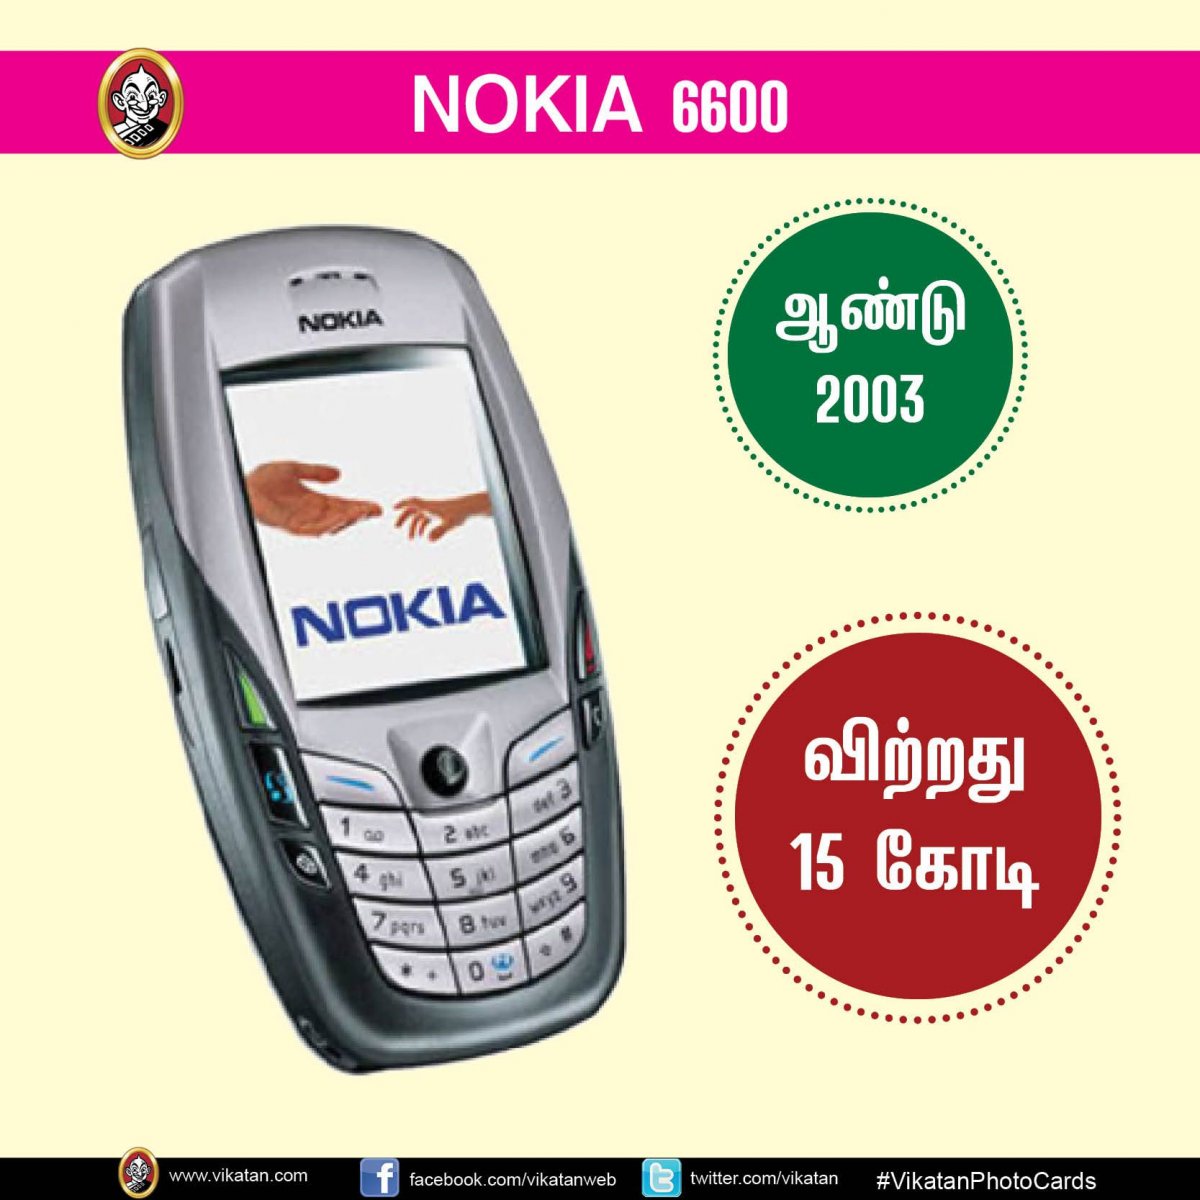 Nokia 2003 года выпуска